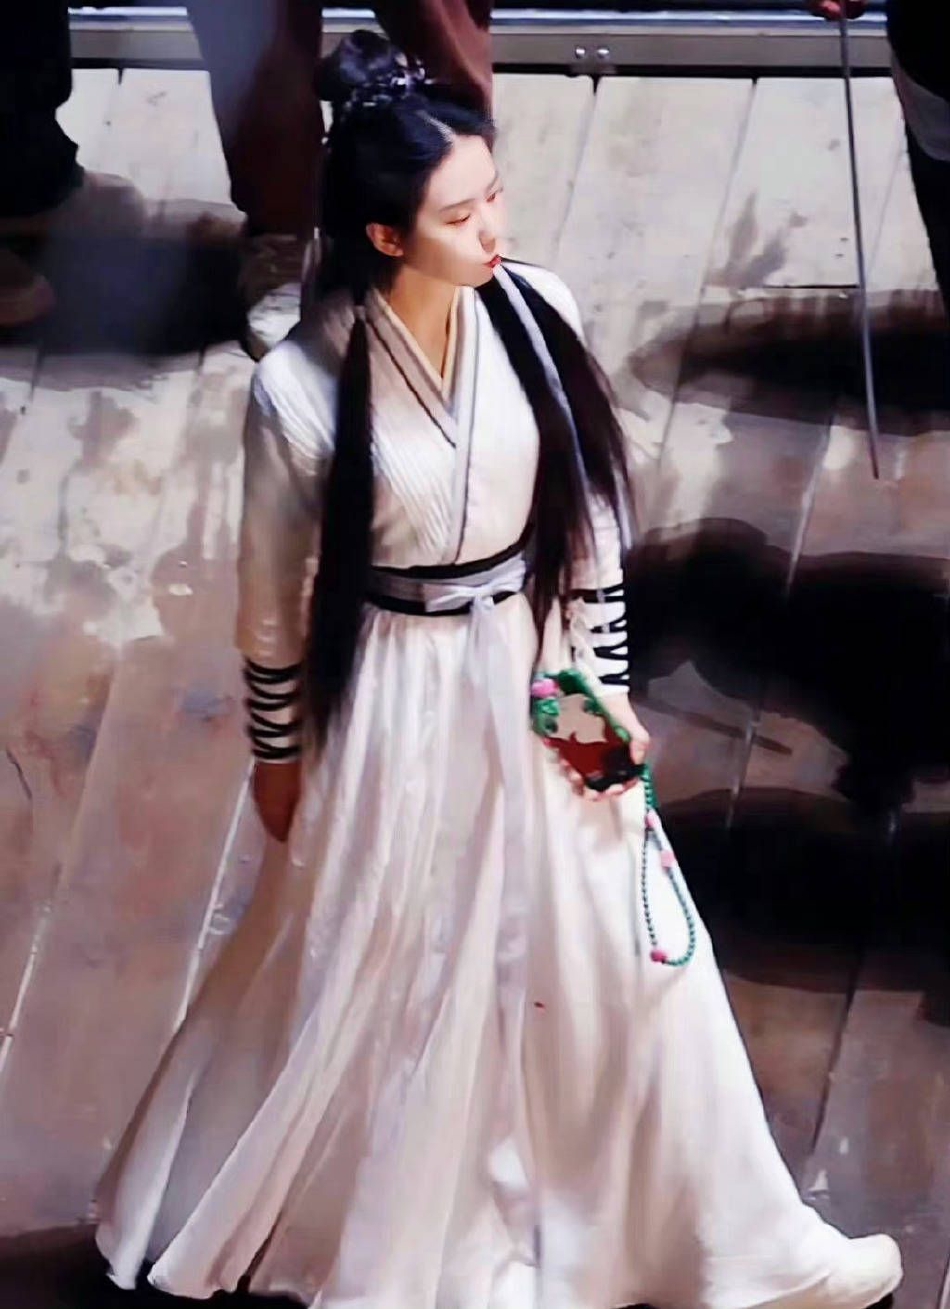 刘诗诗身穿白衣的古装造型路透照曝光 嘟嘴鼓腮好可爱